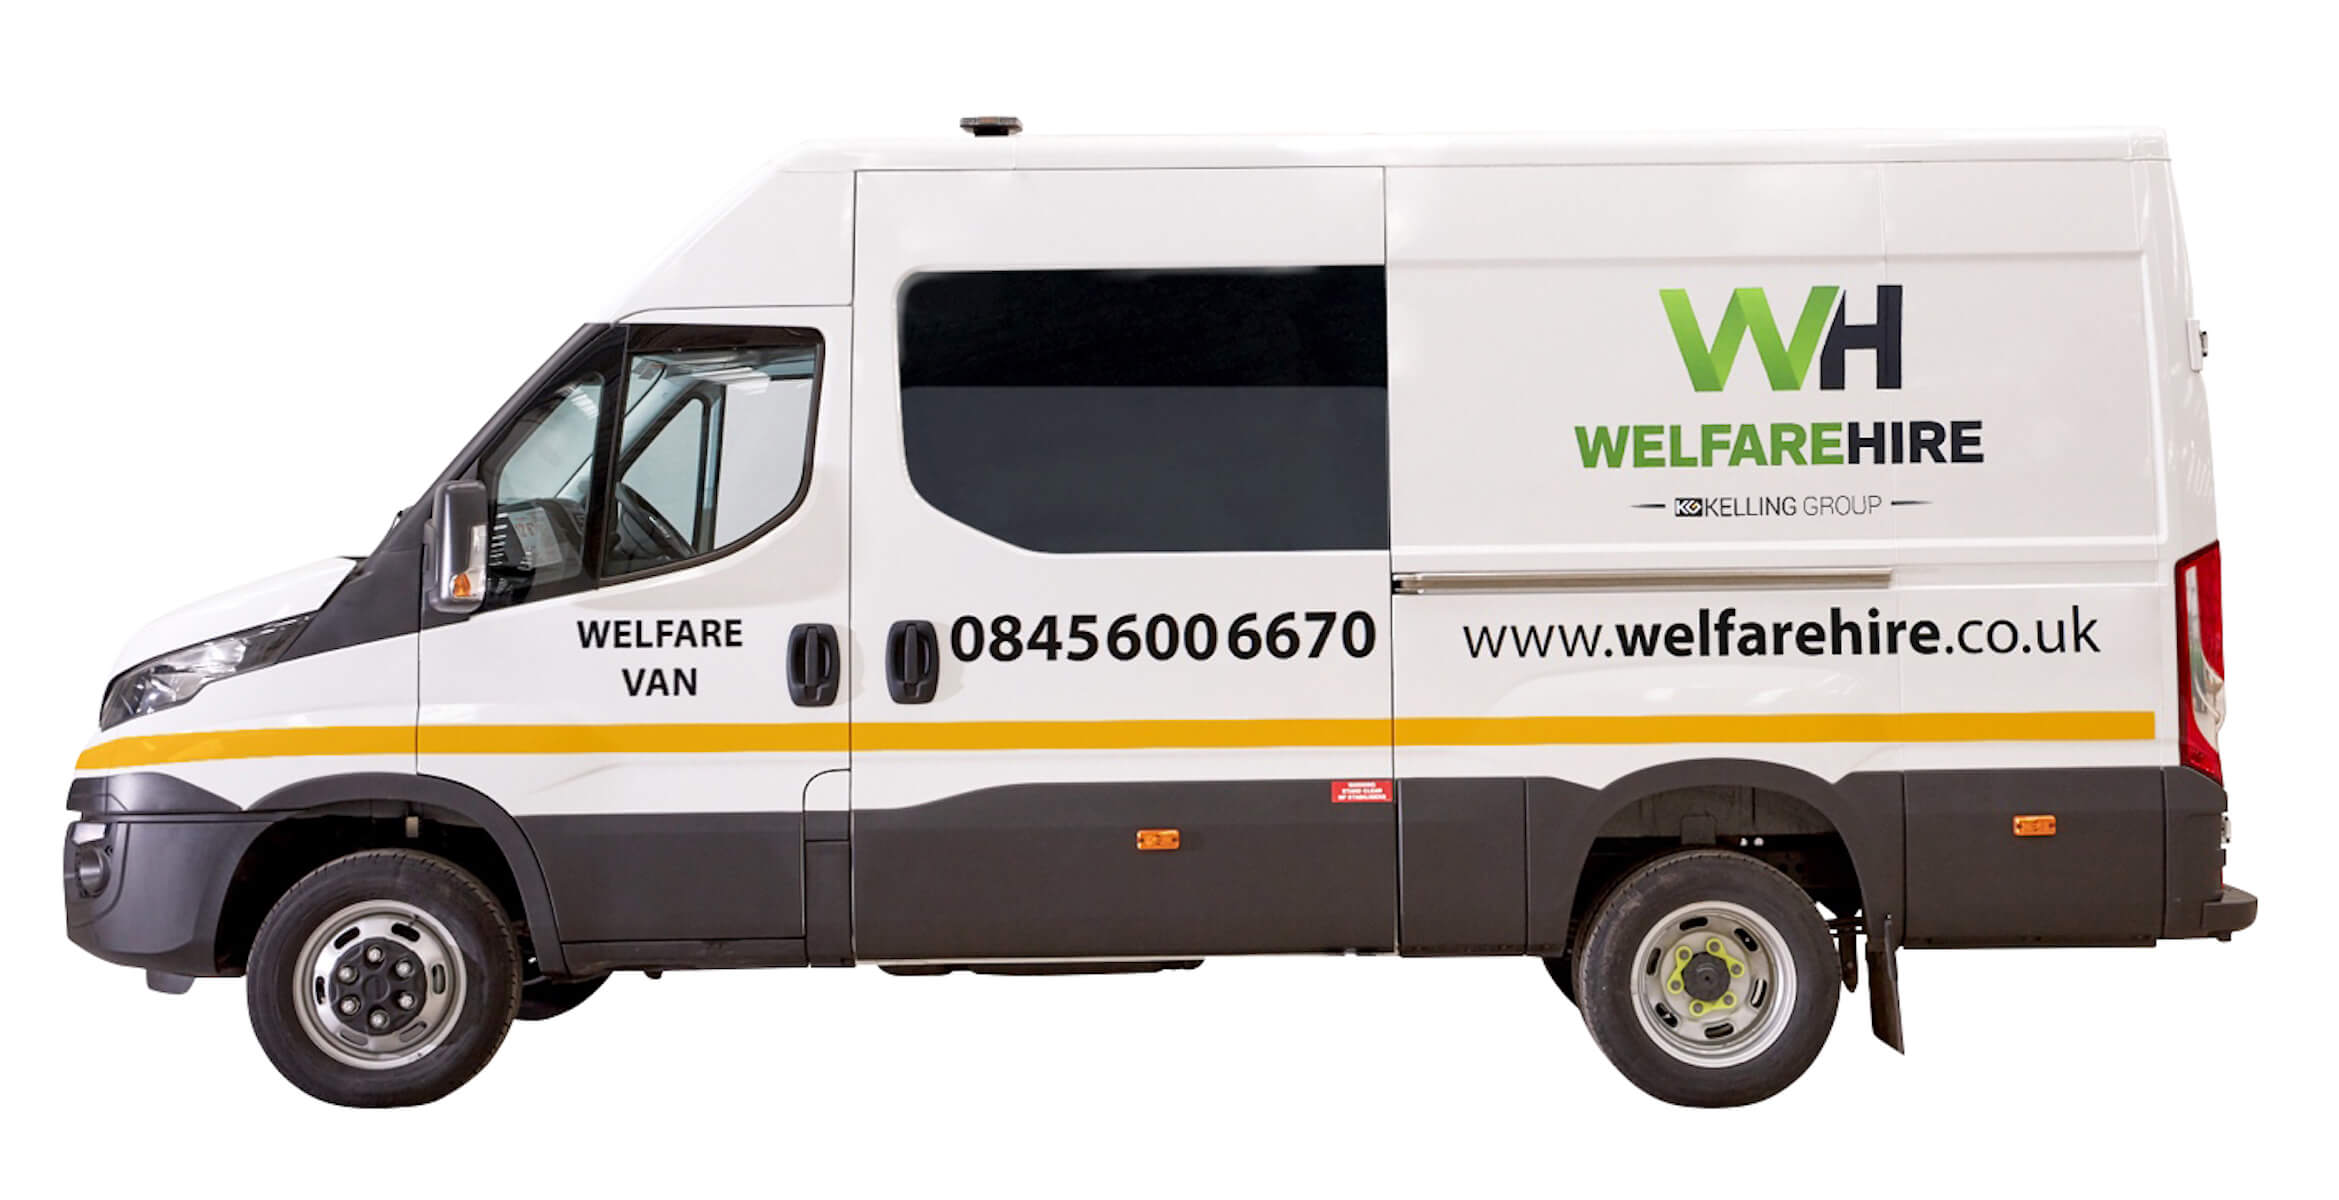 welfare vans for sale